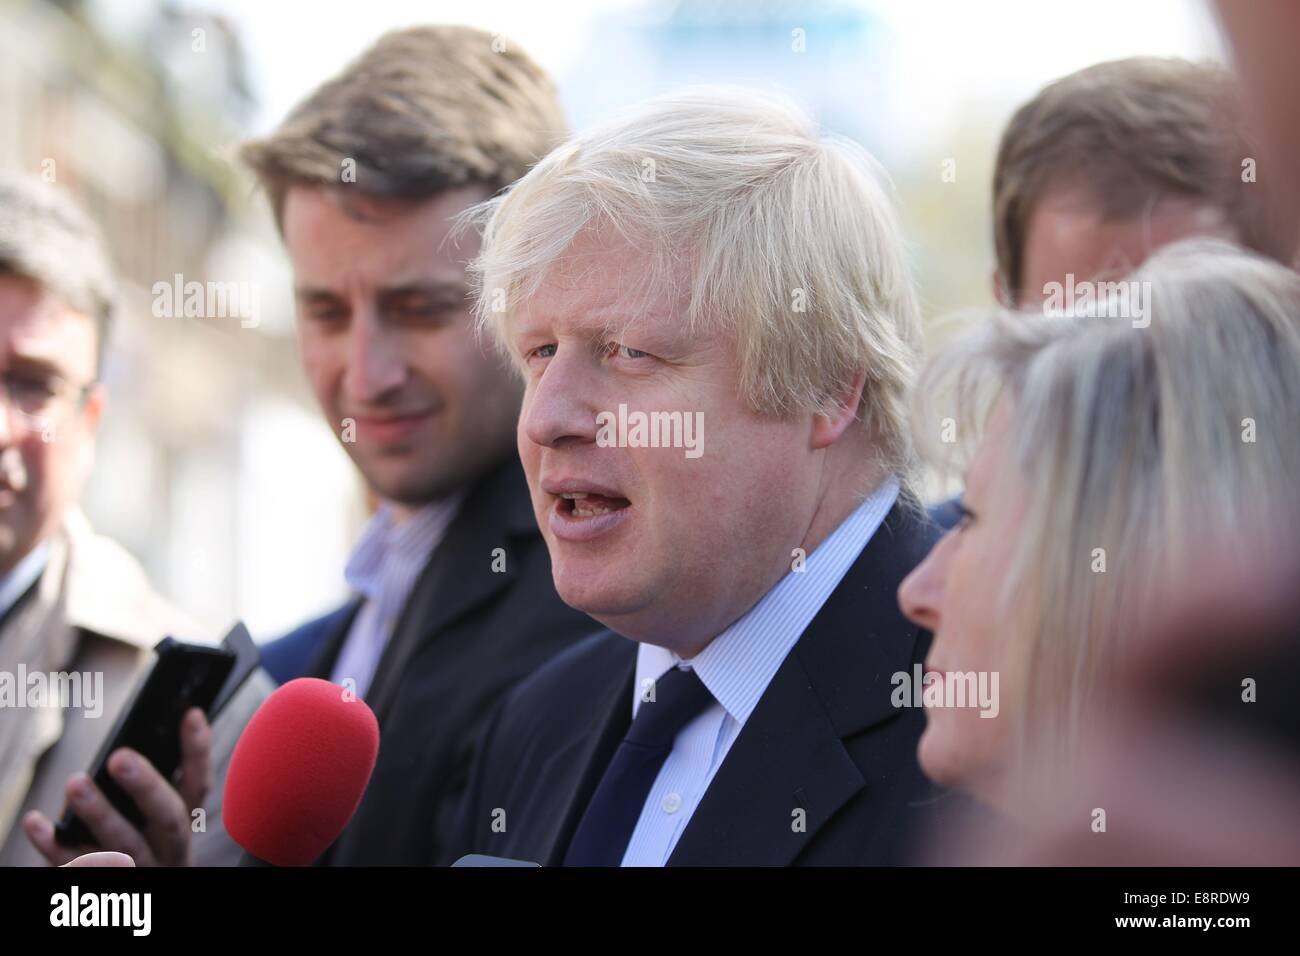 Boris Johnson lasciando la sua promozione di fluidi tracciabili in Harrow per prendere un treno. Dotato di: Boris Johnson dove: Londra, Regno Unito quando: 10 Apr 2014 Foto Stock